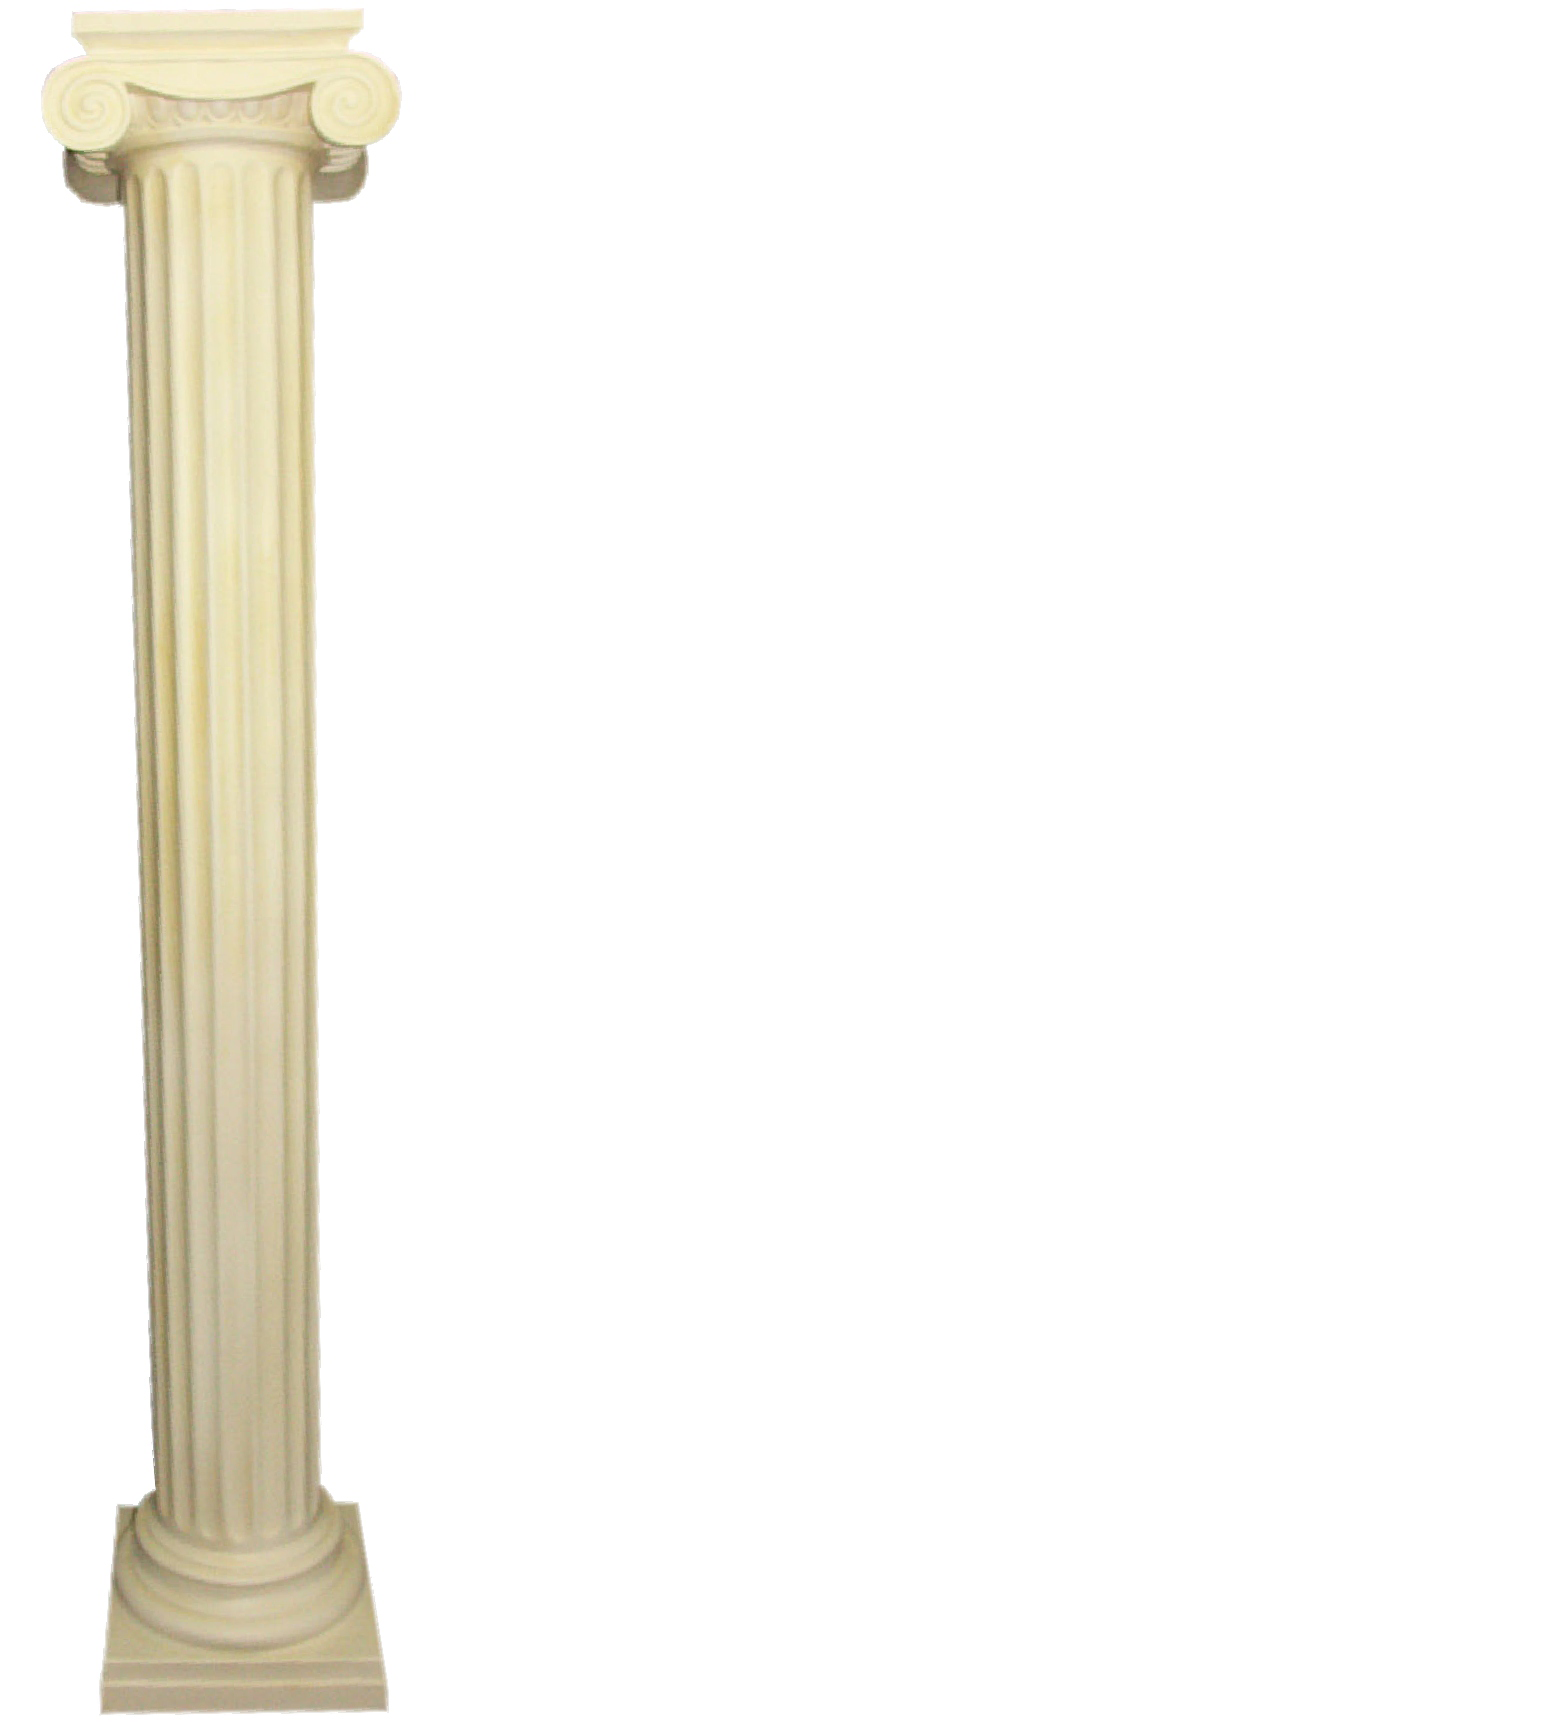 XXL Griechische Säule Antik Stil Design Säulen Luxus Stützen Neu 218cm